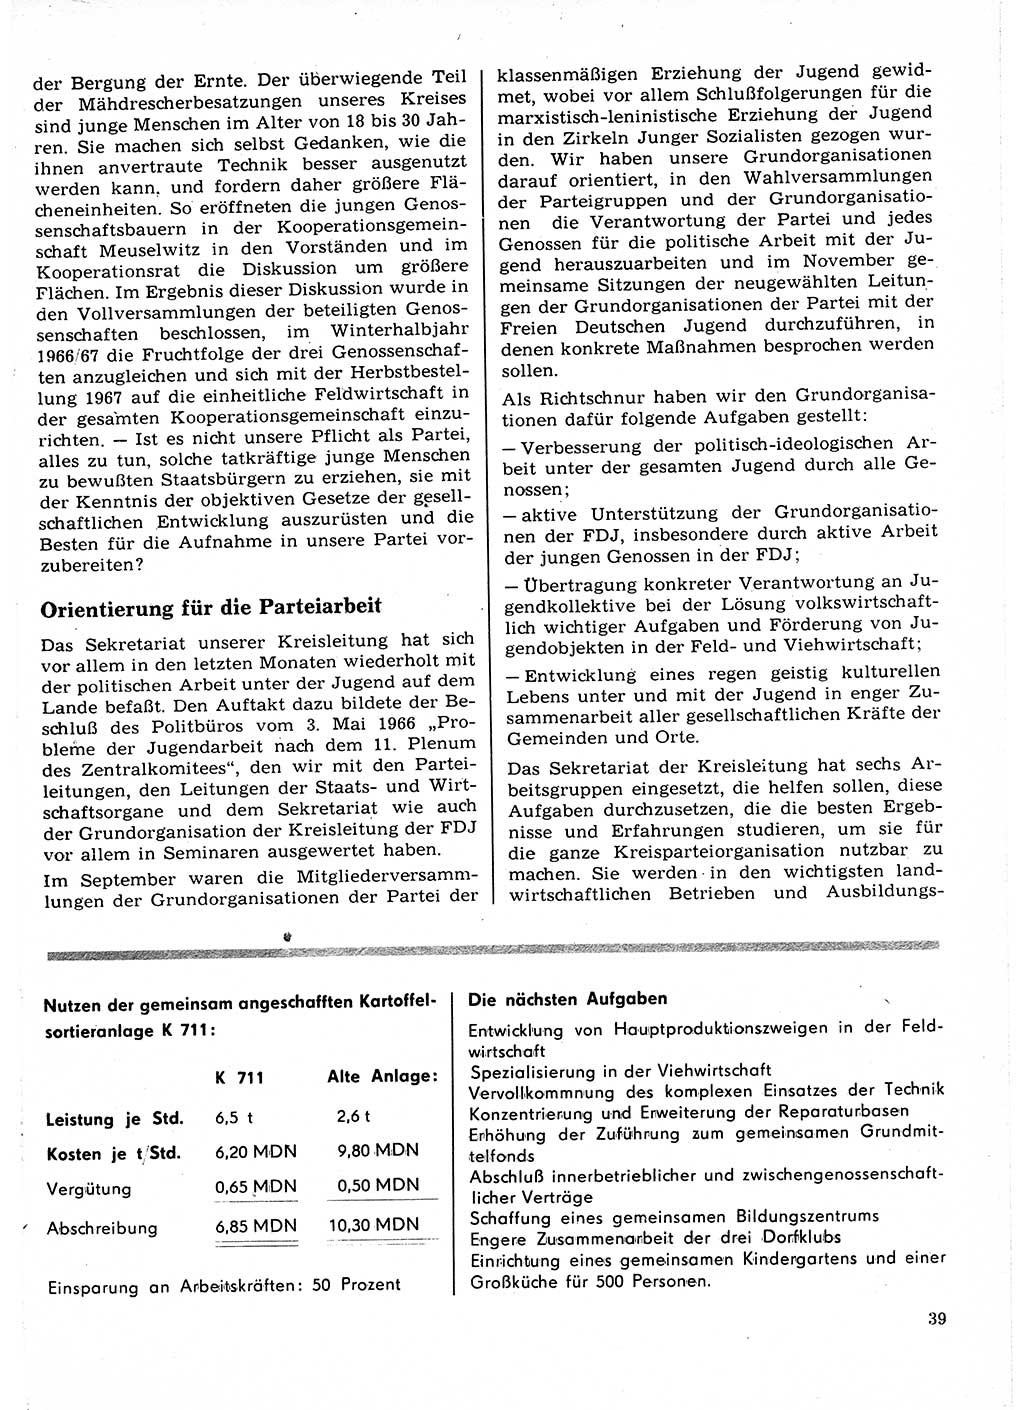 Neuer Weg (NW), Organ des Zentralkomitees (ZK) der SED (Sozialistische Einheitspartei Deutschlands) für Fragen des Parteilebens, 22. Jahrgang [Deutsche Demokratische Republik (DDR)] 1967, Seite 39 (NW ZK SED DDR 1967, S. 39)